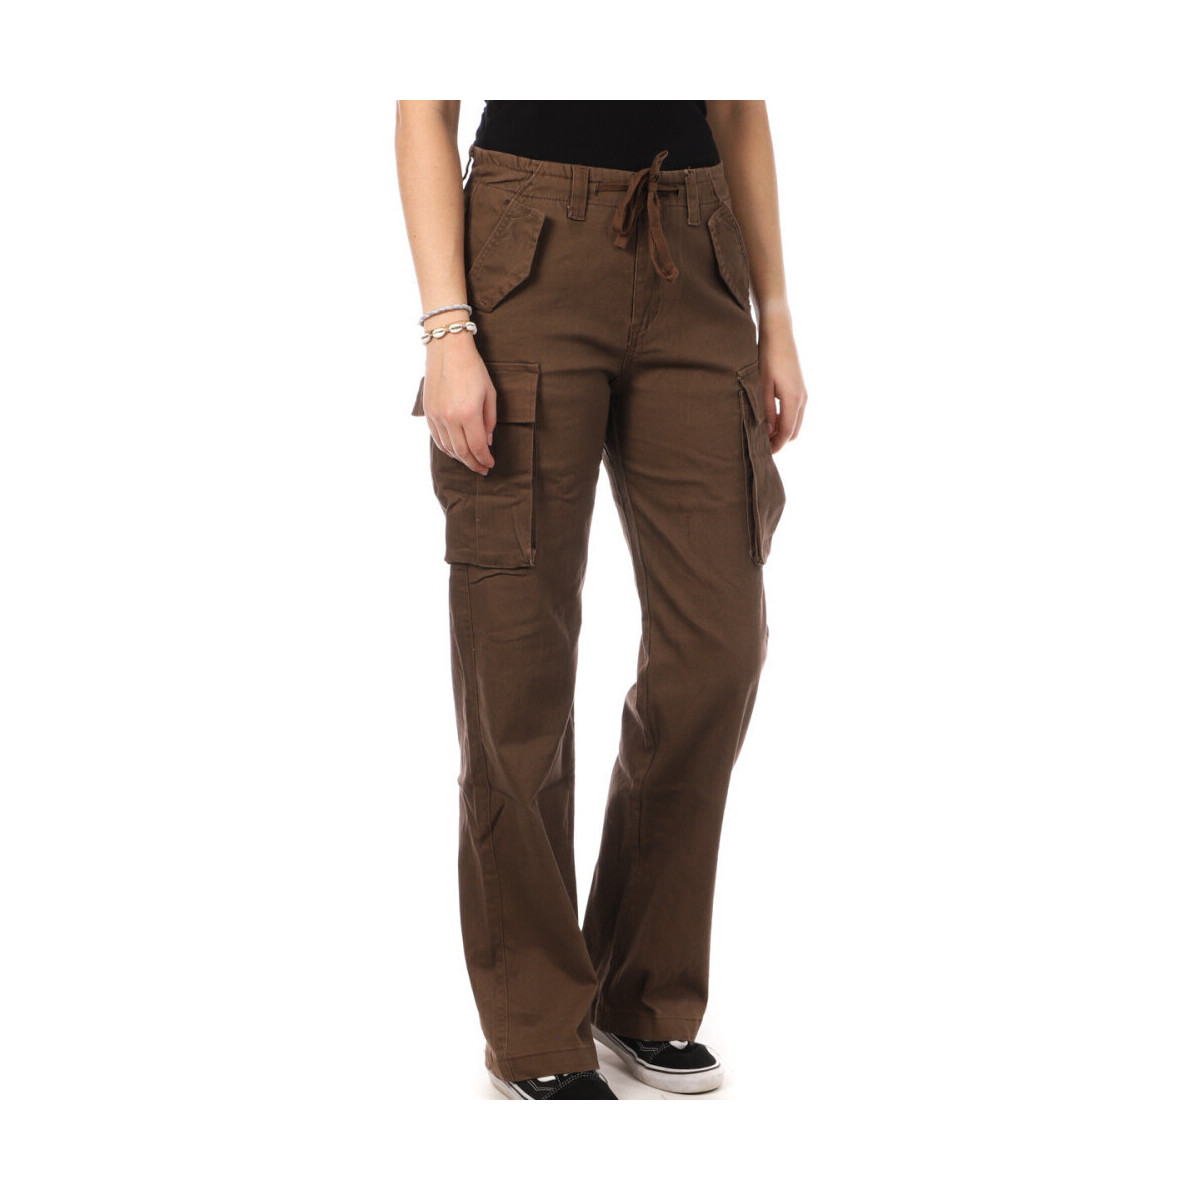 Vêtements Femme Pantalons Monday Premium L-3163-2 Marron